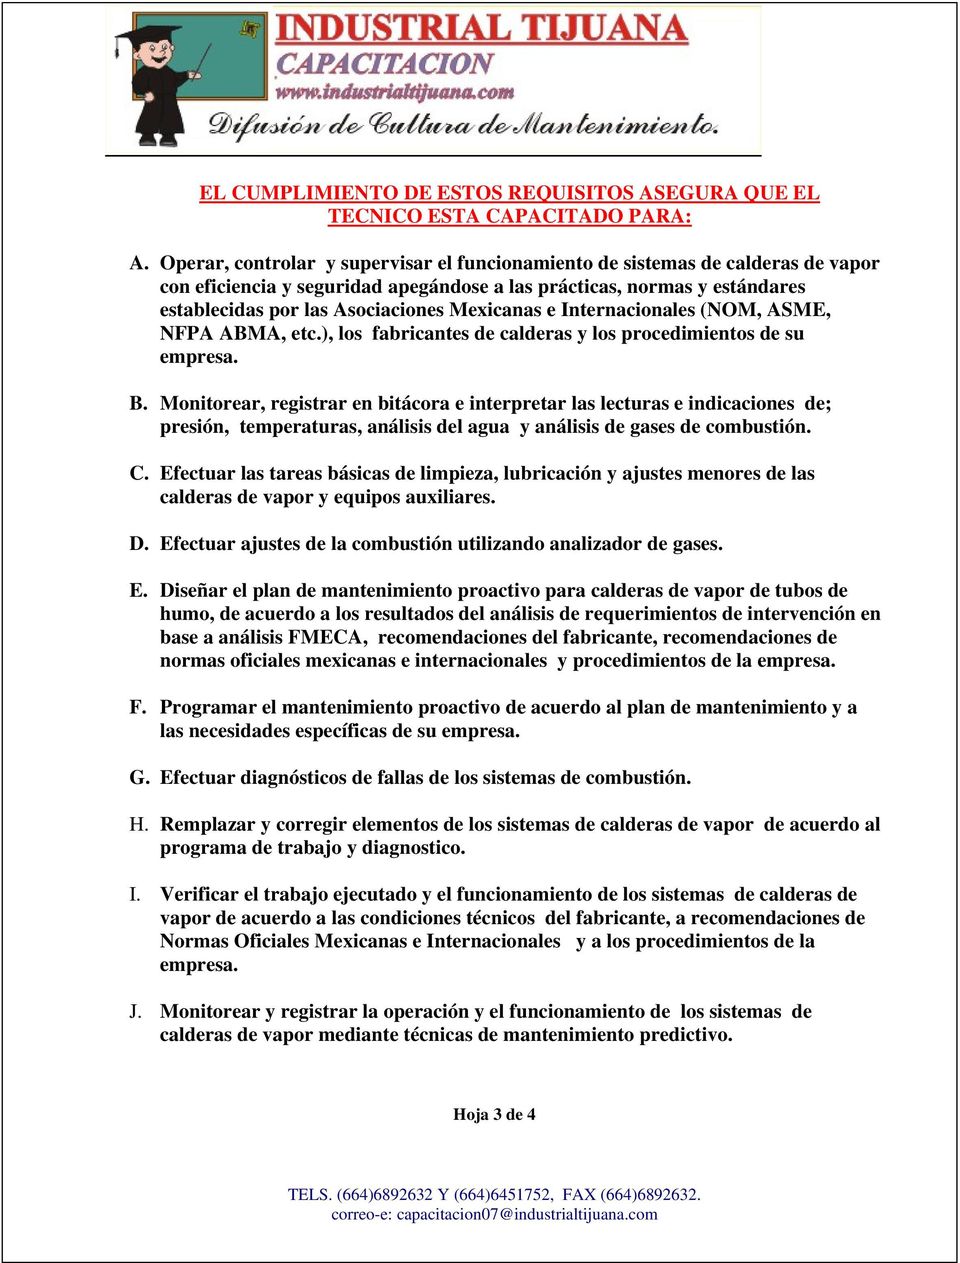 Mexicanas e Internacionales (NOM, ASME, NFPA ABMA, etc.), los fabricantes de calderas y los procedimientos de su empresa. B.